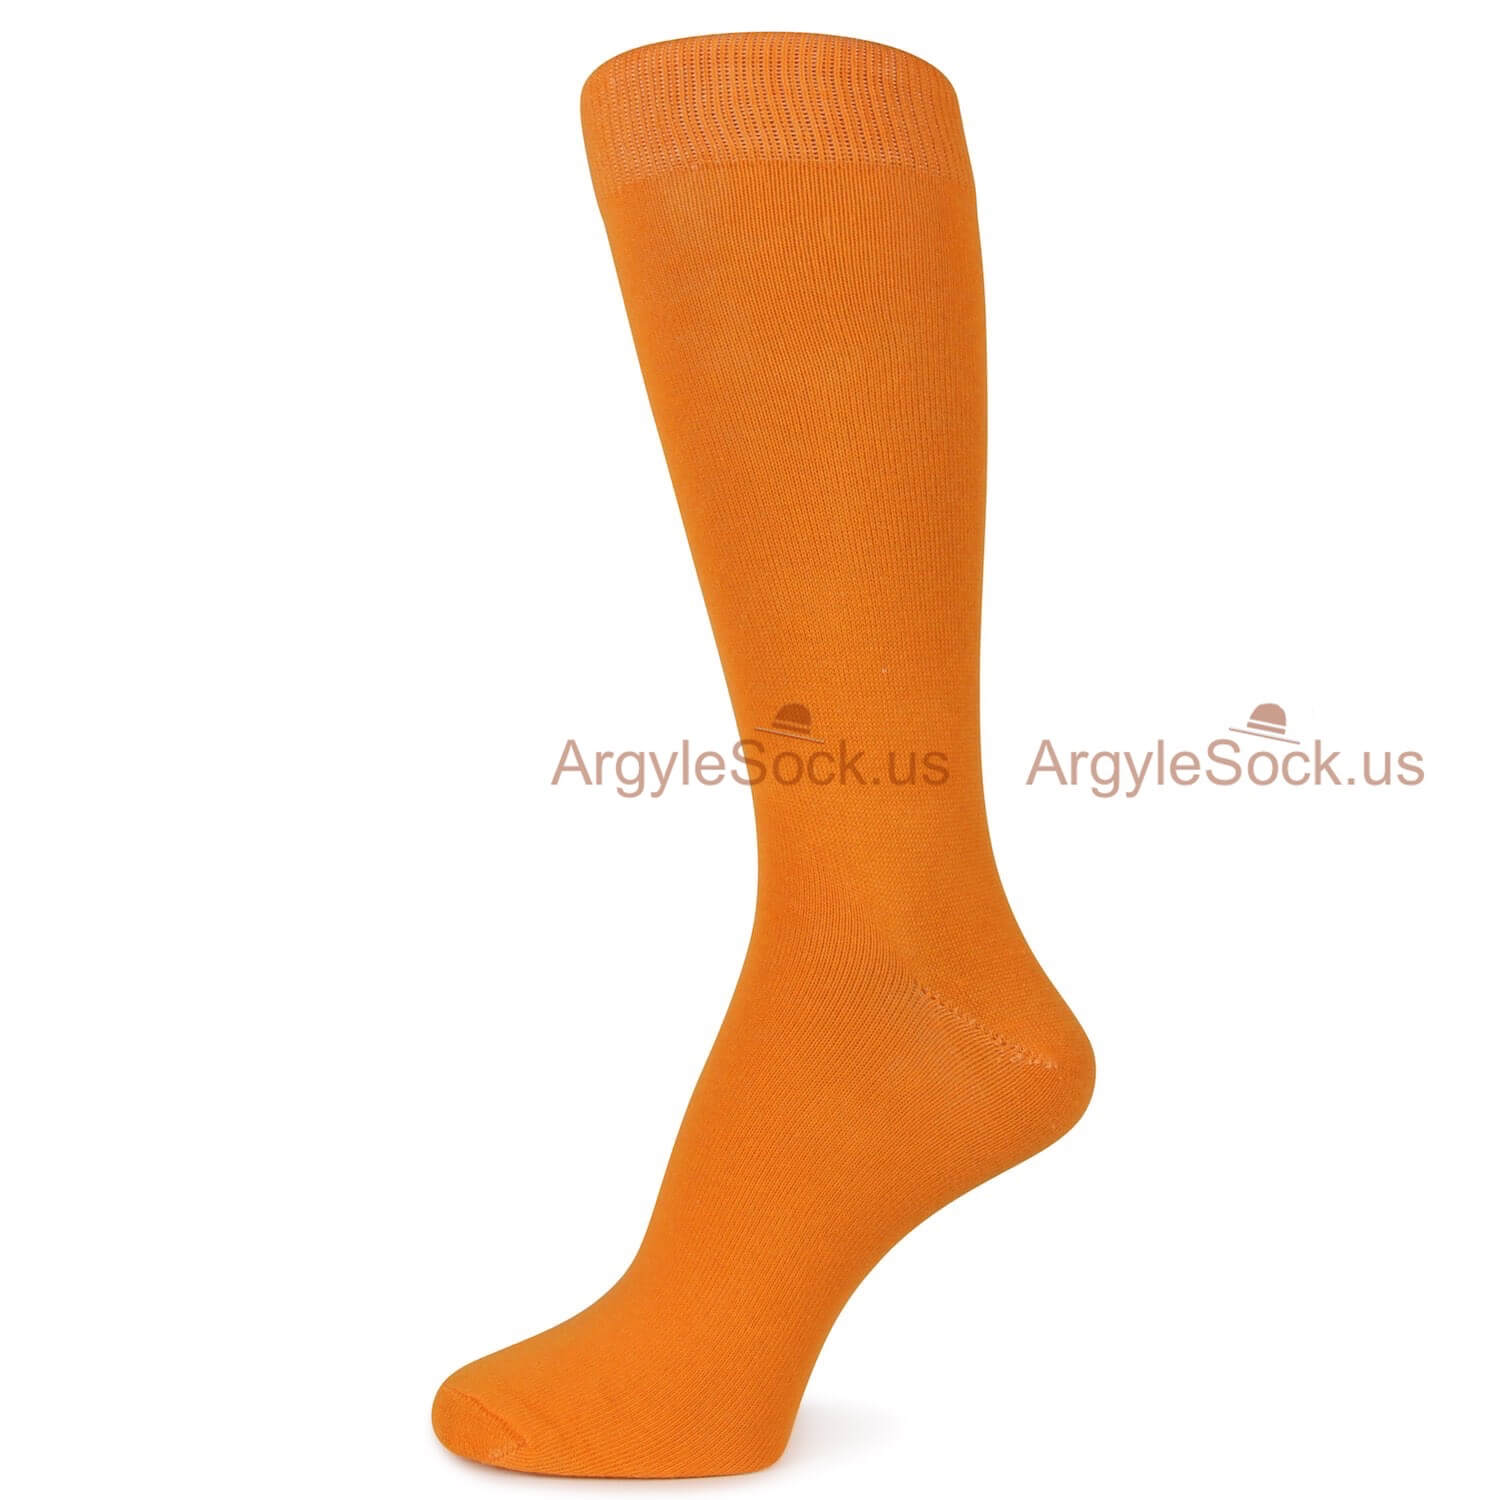 Bright Orange Plain Socks For Men